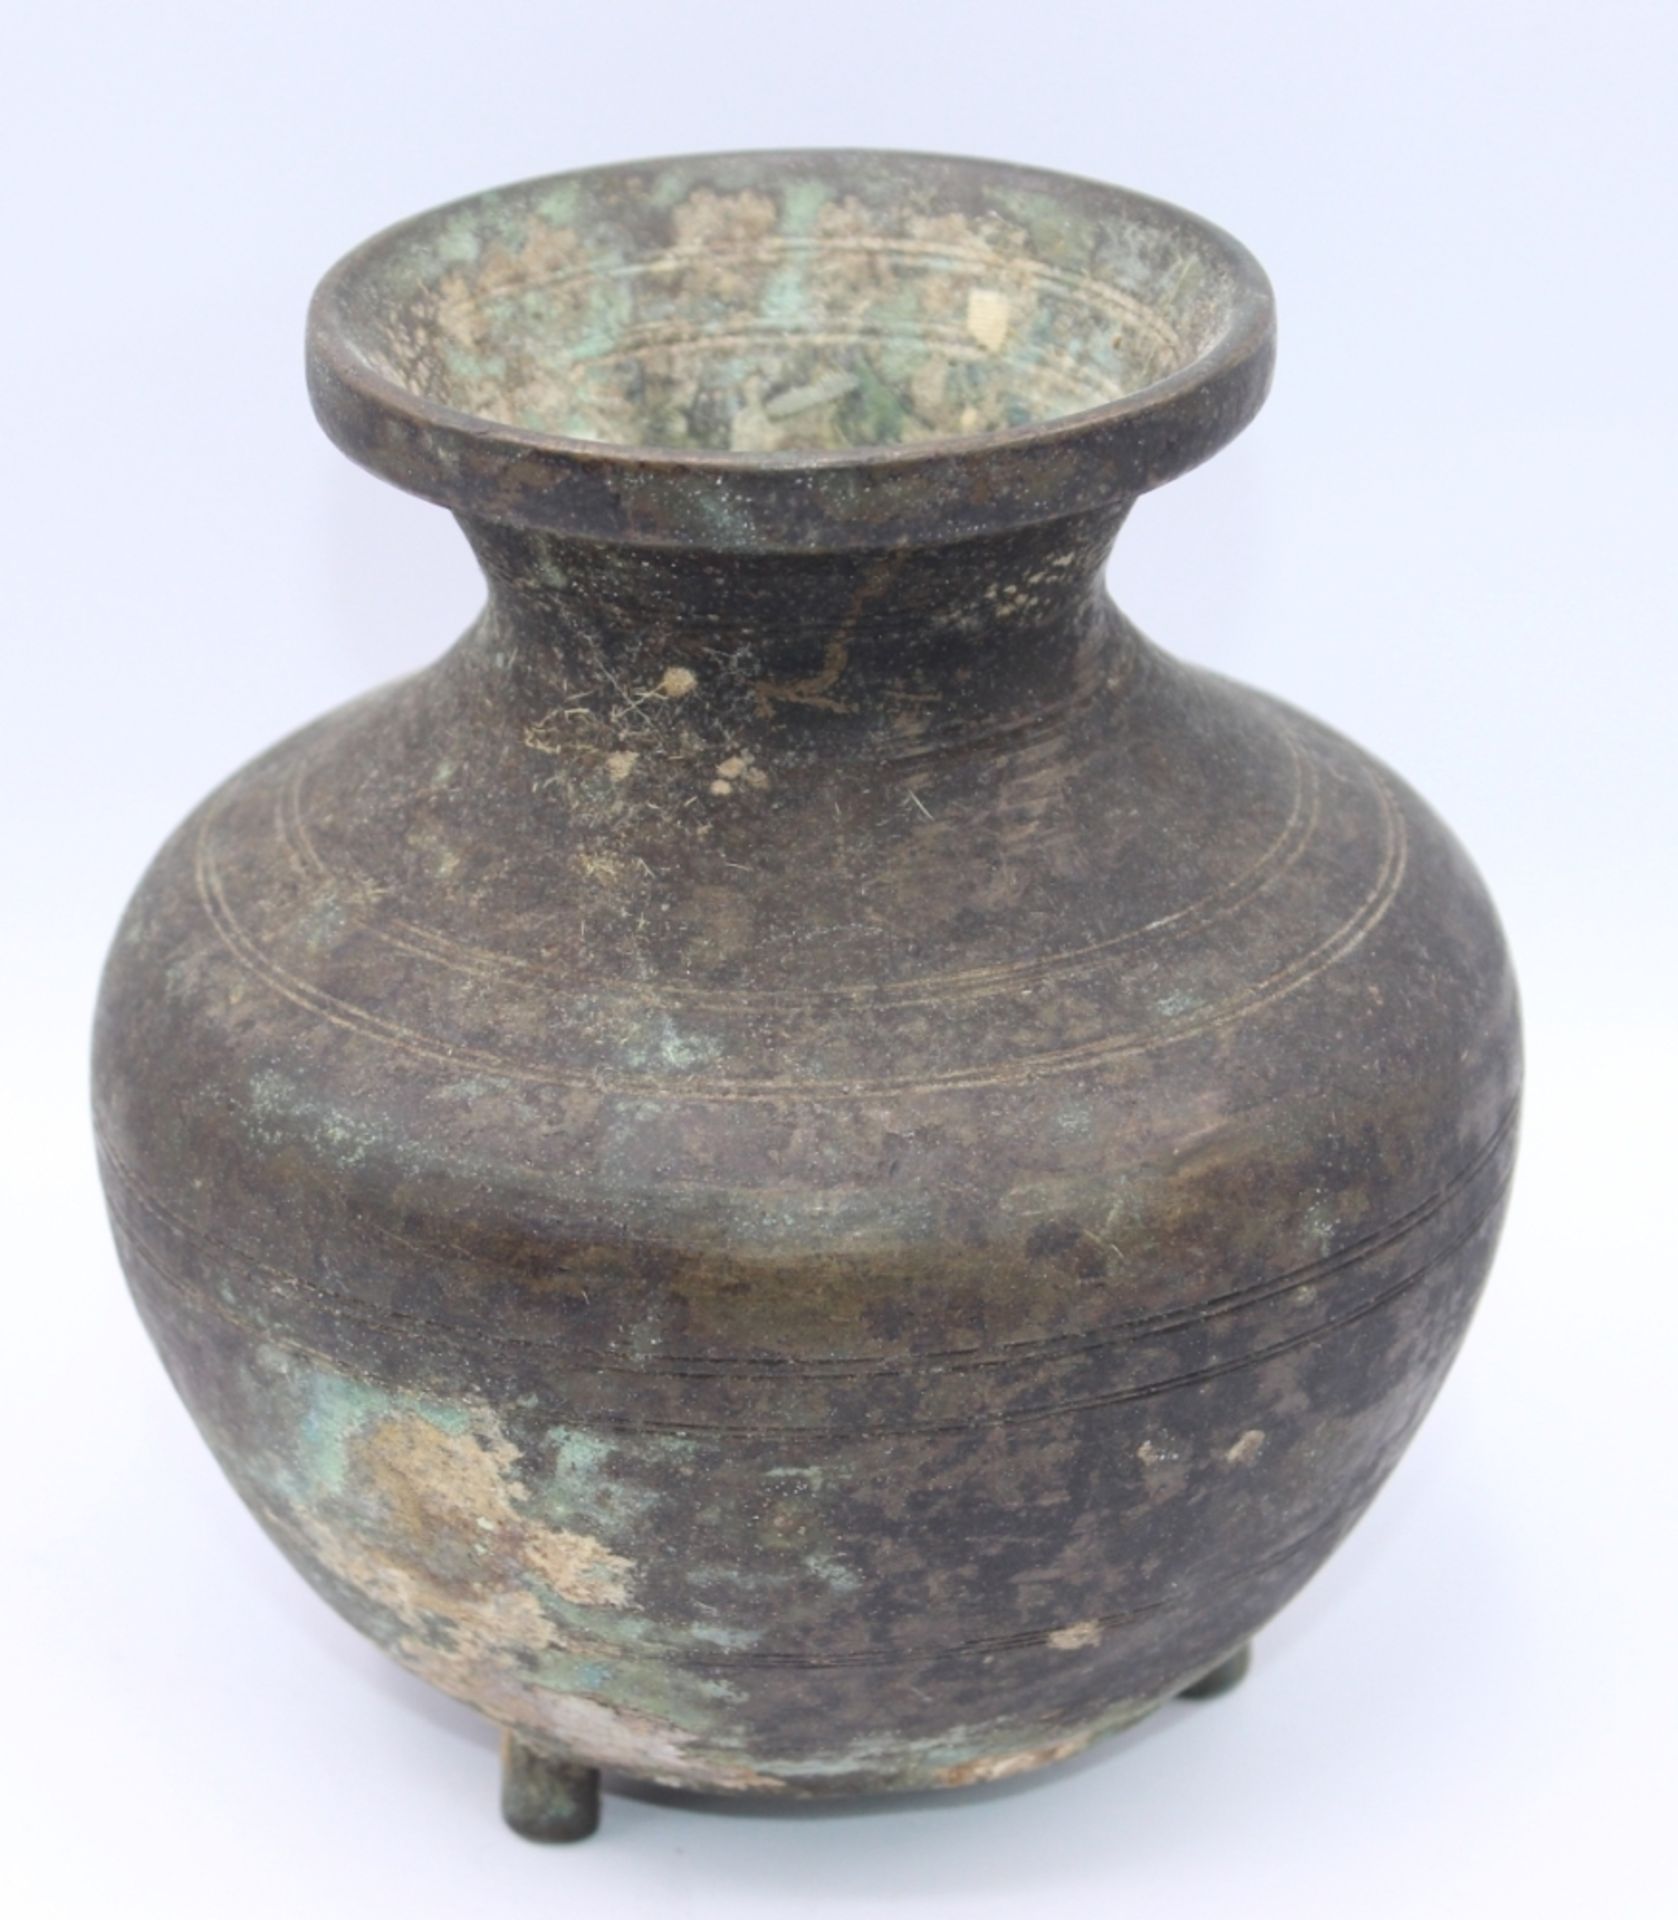 Antike Vase - wohl China Bronze, bauchiger Korpus mit Querrillen, auf drei Füßen stehend, starke